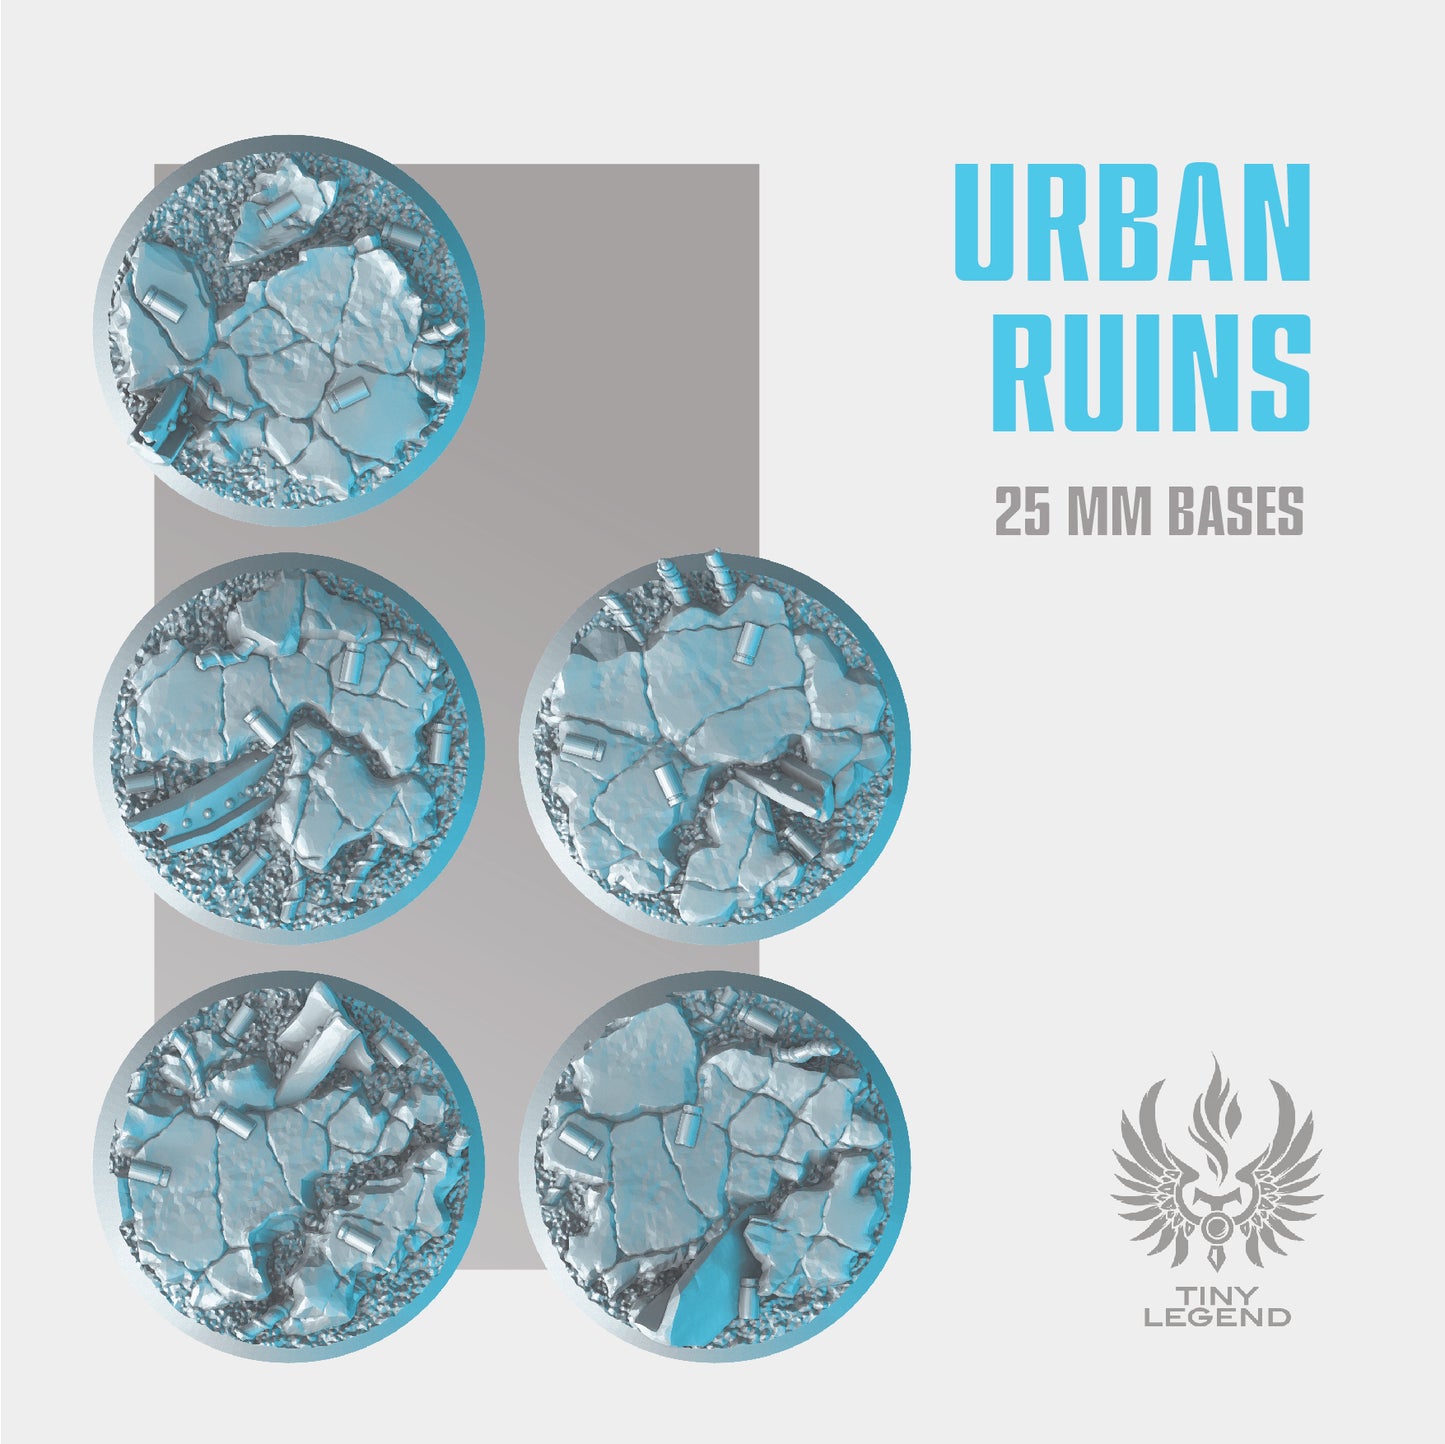 Urban ruins bases 25 mm STL